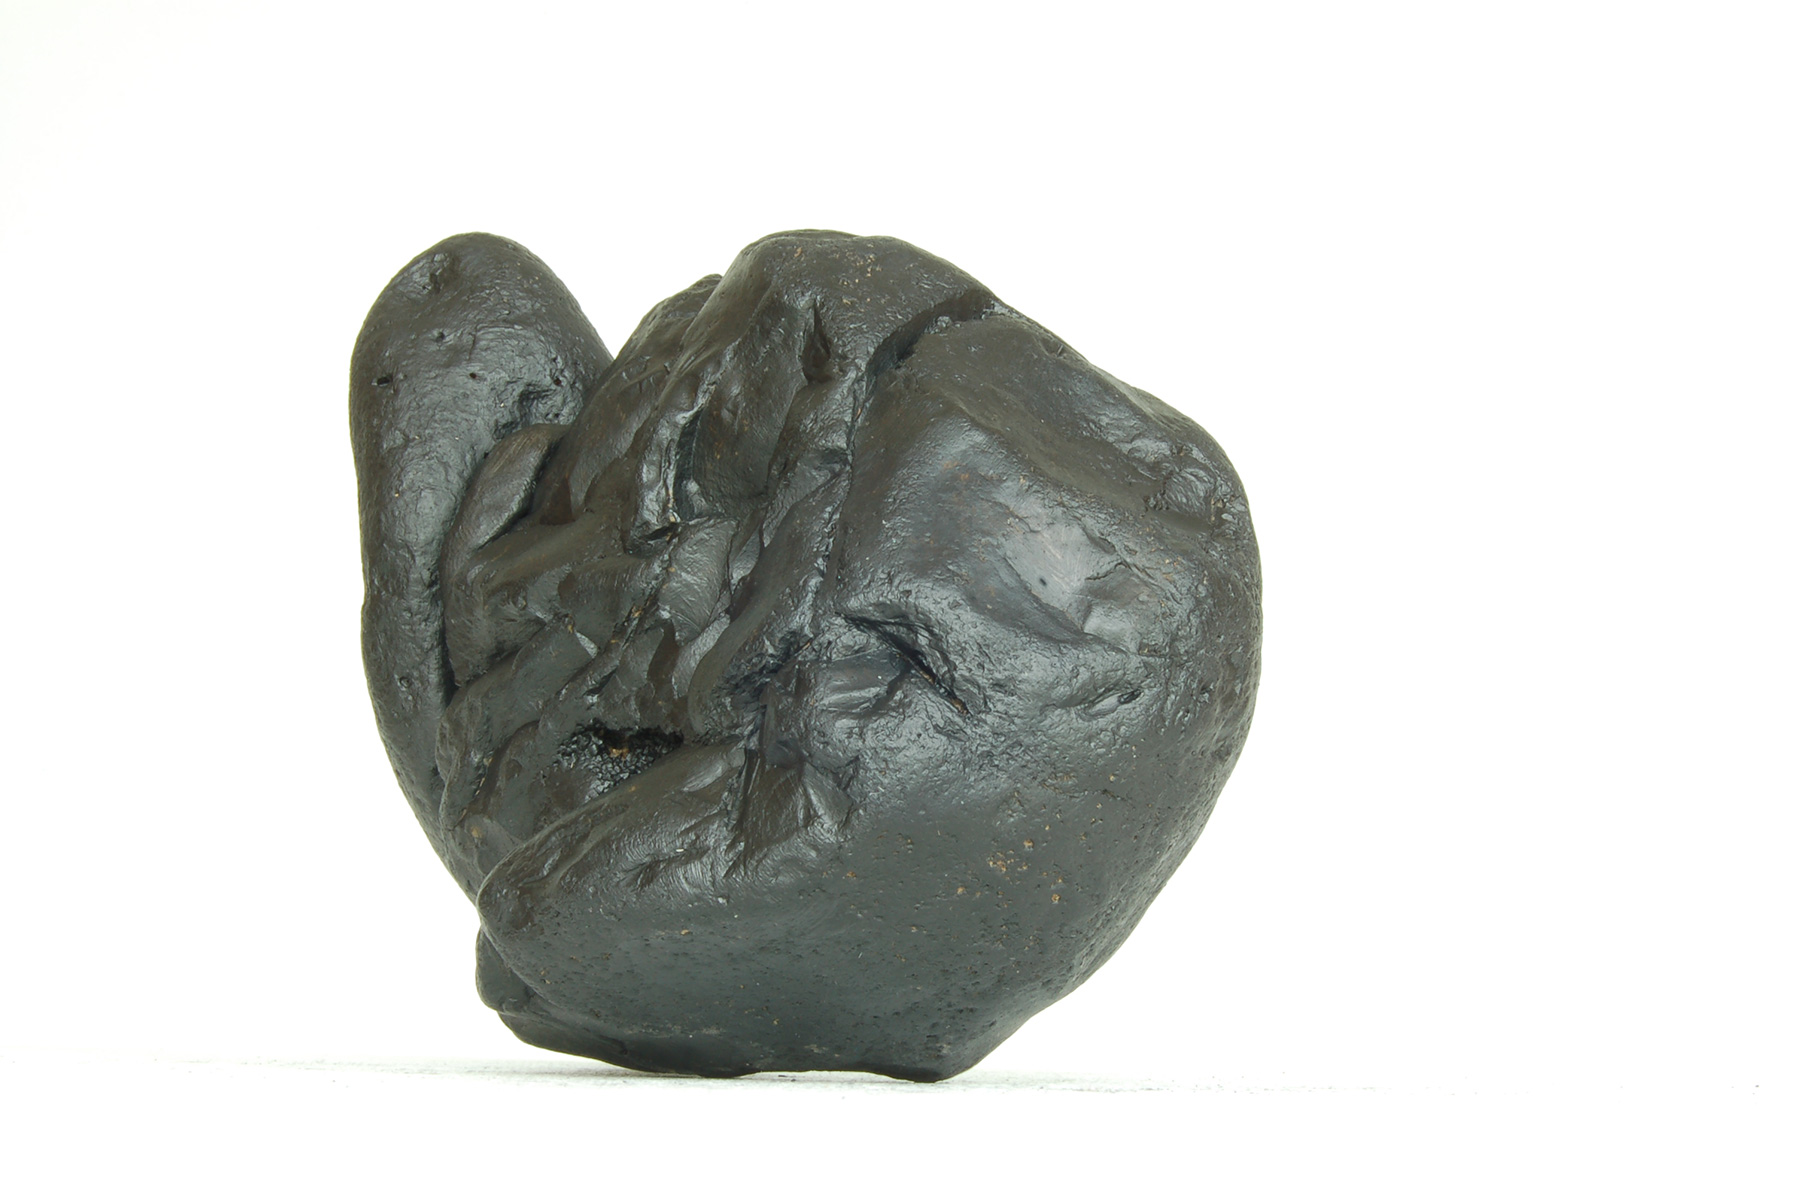 Jean-Michel Sanejouand - Sculpture - La trouée du singe - 2009 - Stones painted in black